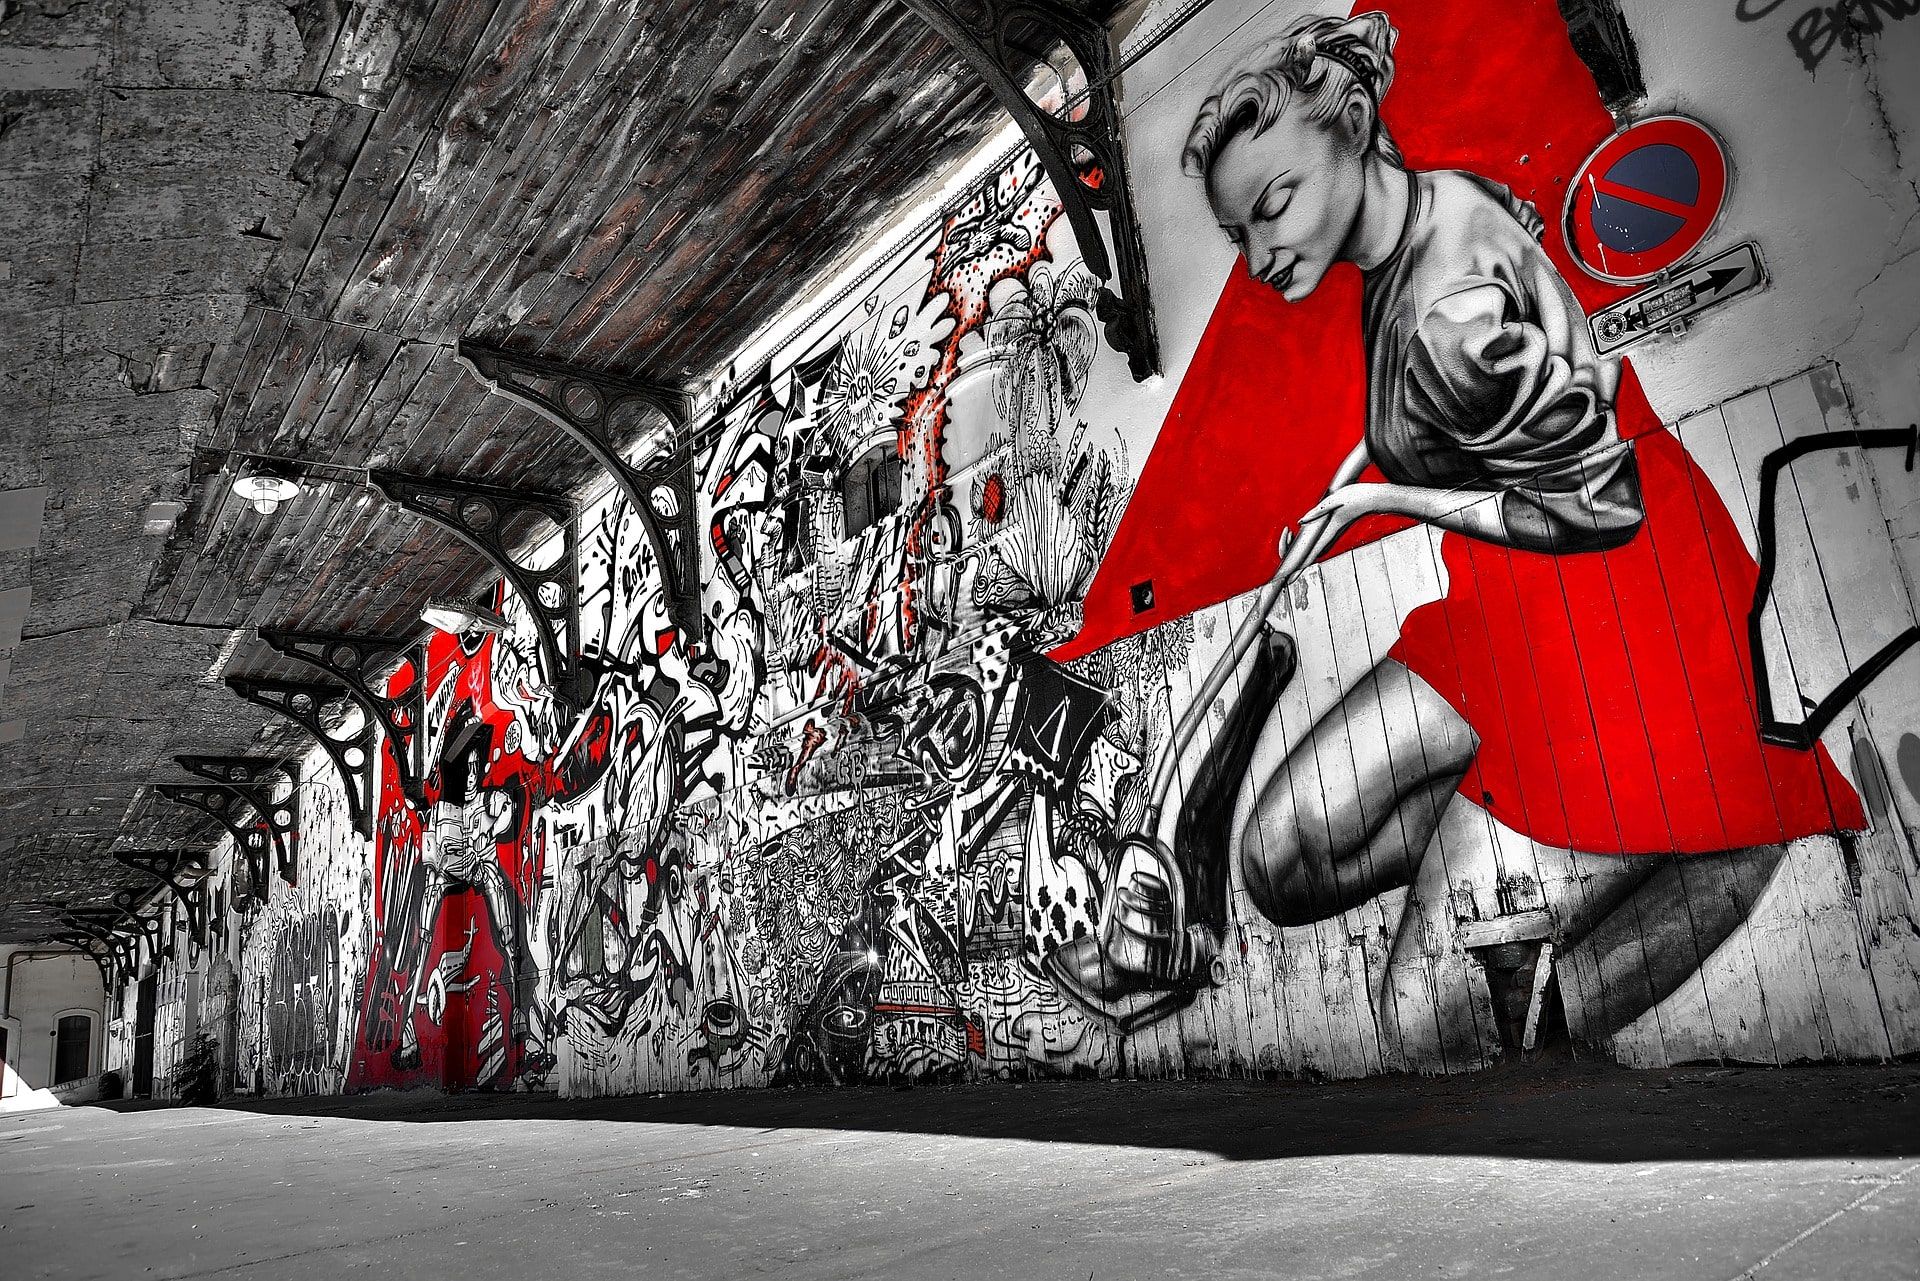 El "Street art" por Jordi Cuxart Teres